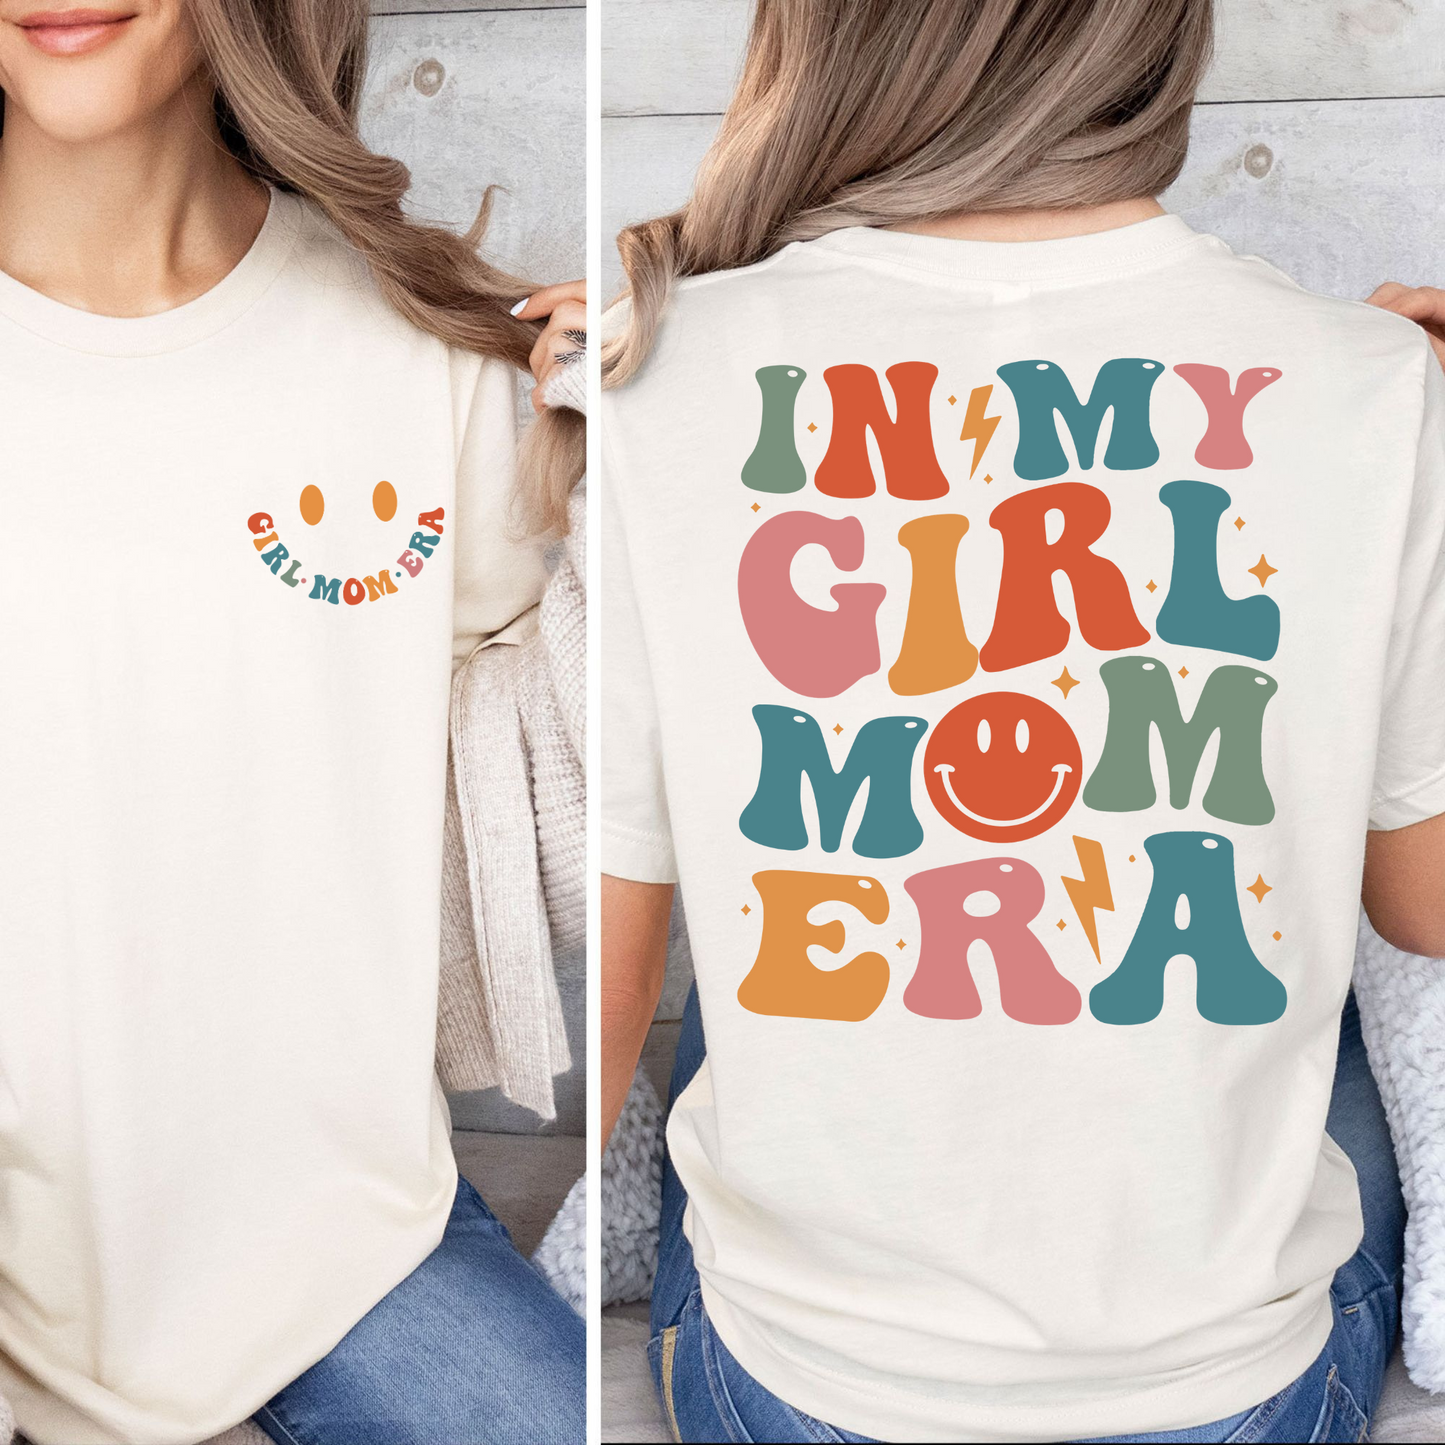 Girl Mom Era Sweatshirt - Das perfekte Geschenk für Mütter von Töchtern